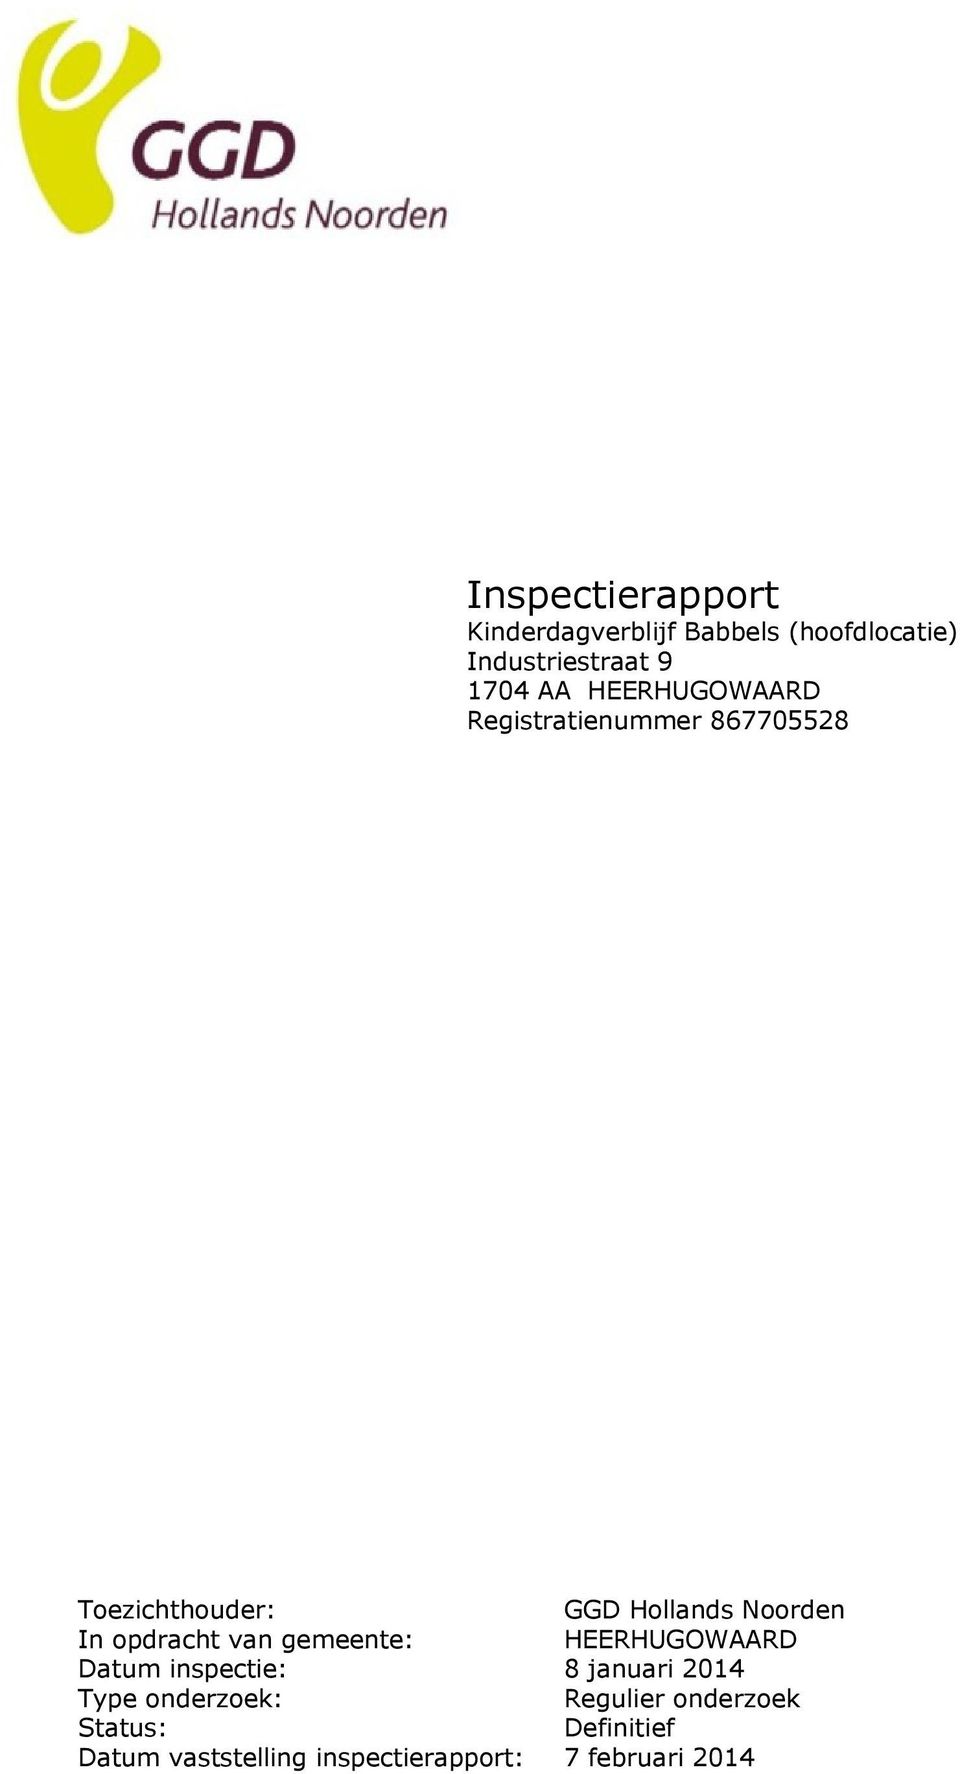 opdracht van gemeente: HEERHUGOWAARD Datum inspectie: 8 januari 2014 Type onderzoek: